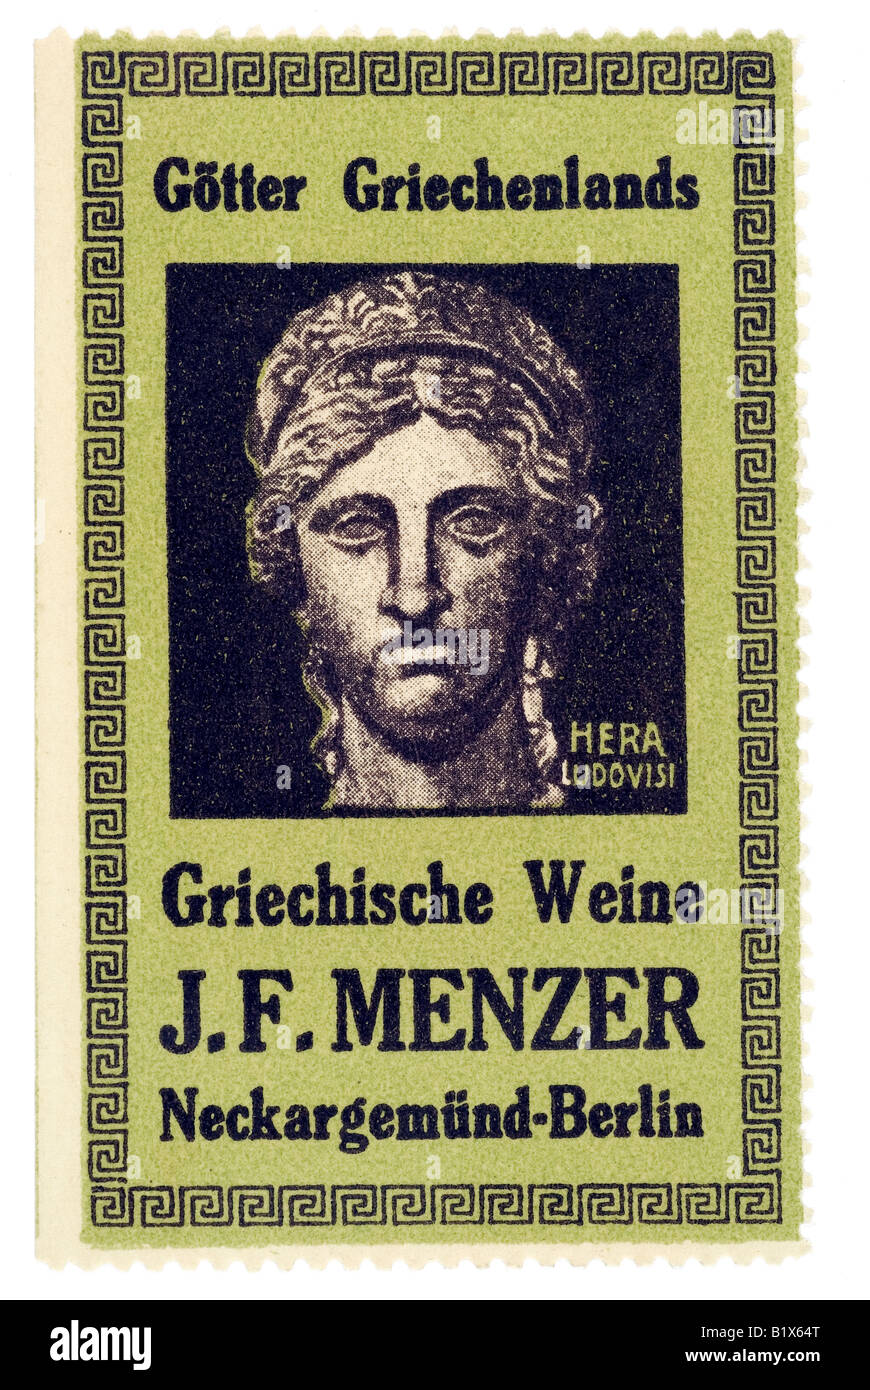 trading stamp wine Götter Griechenlands Griechische Weine J F Menzer Neckargemünd Berlin Hera Ludovisi Stock Photo